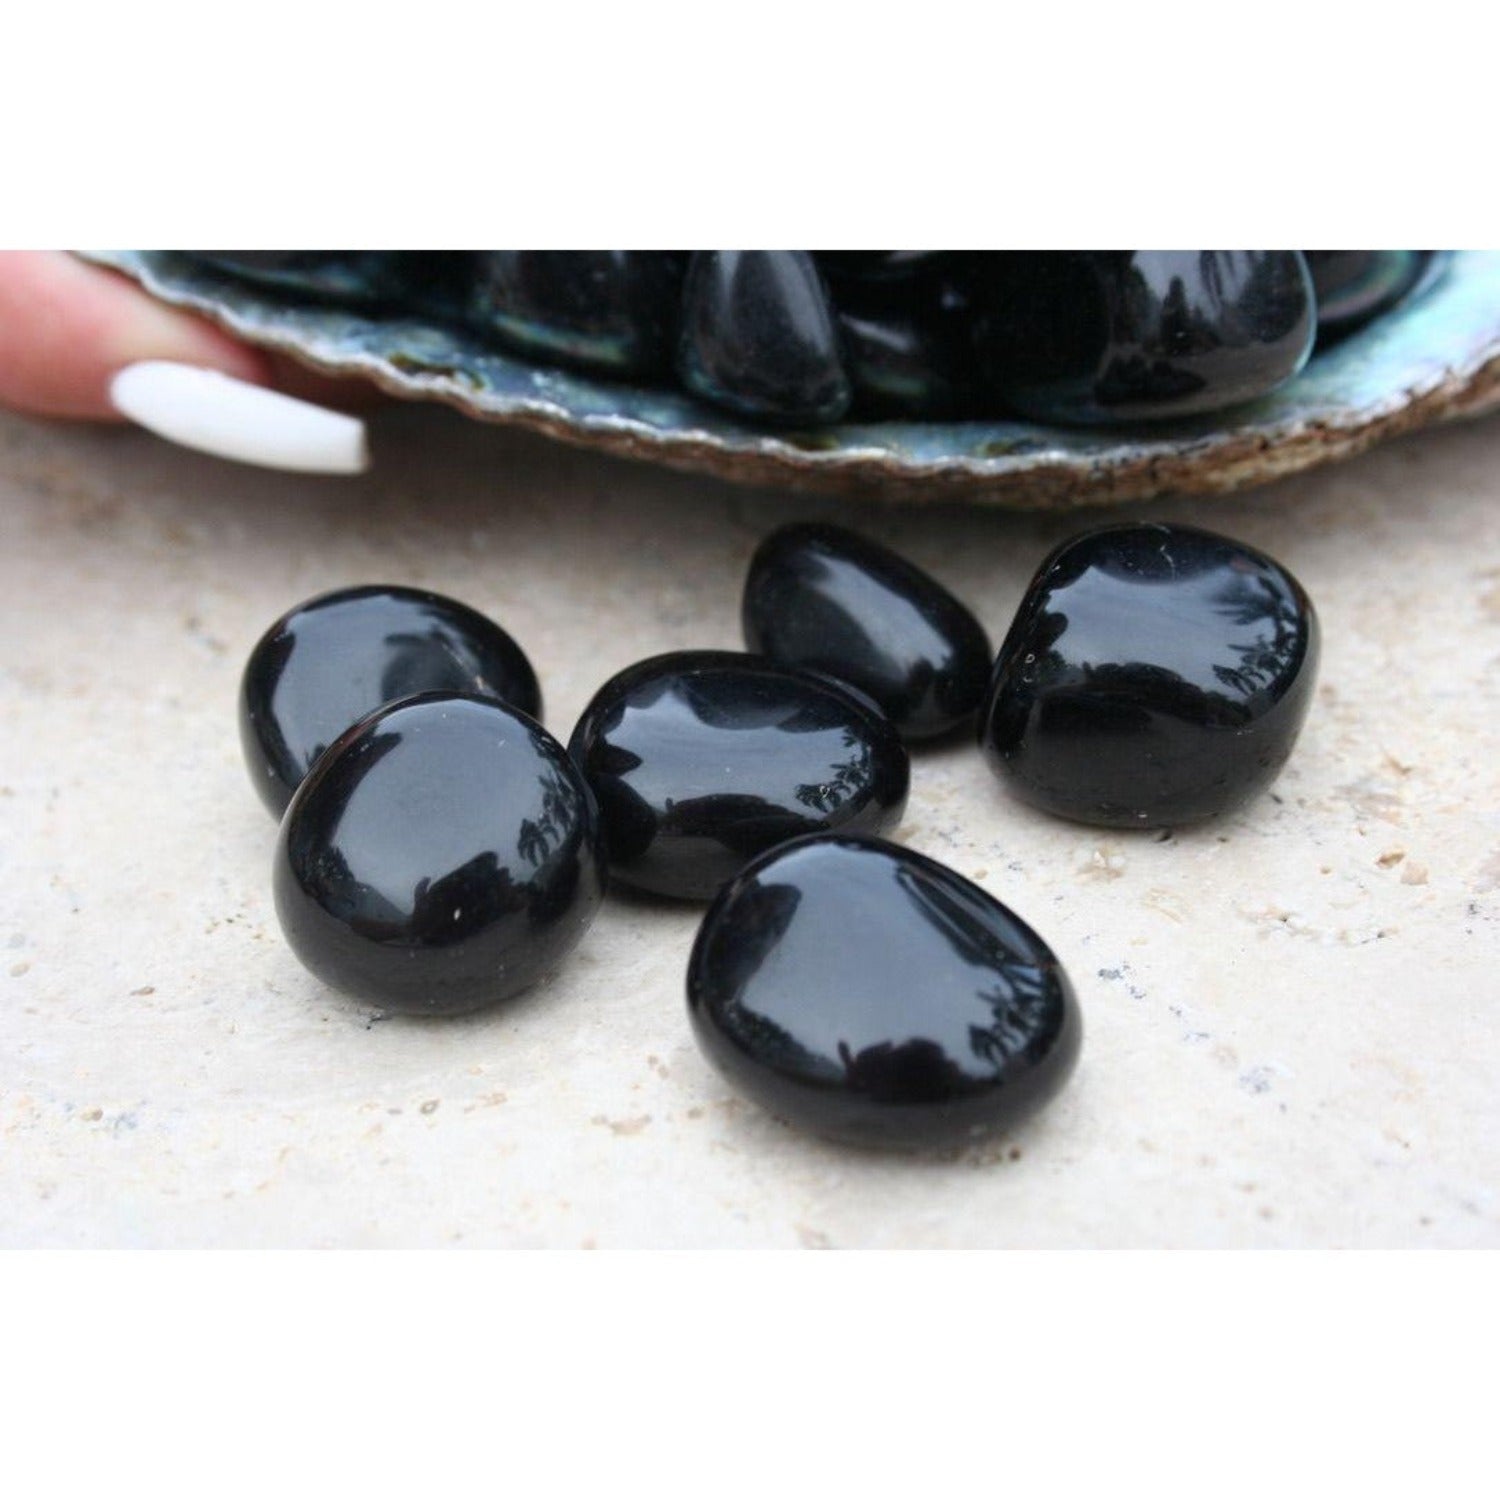 One Black Obsidian Tumble Stone